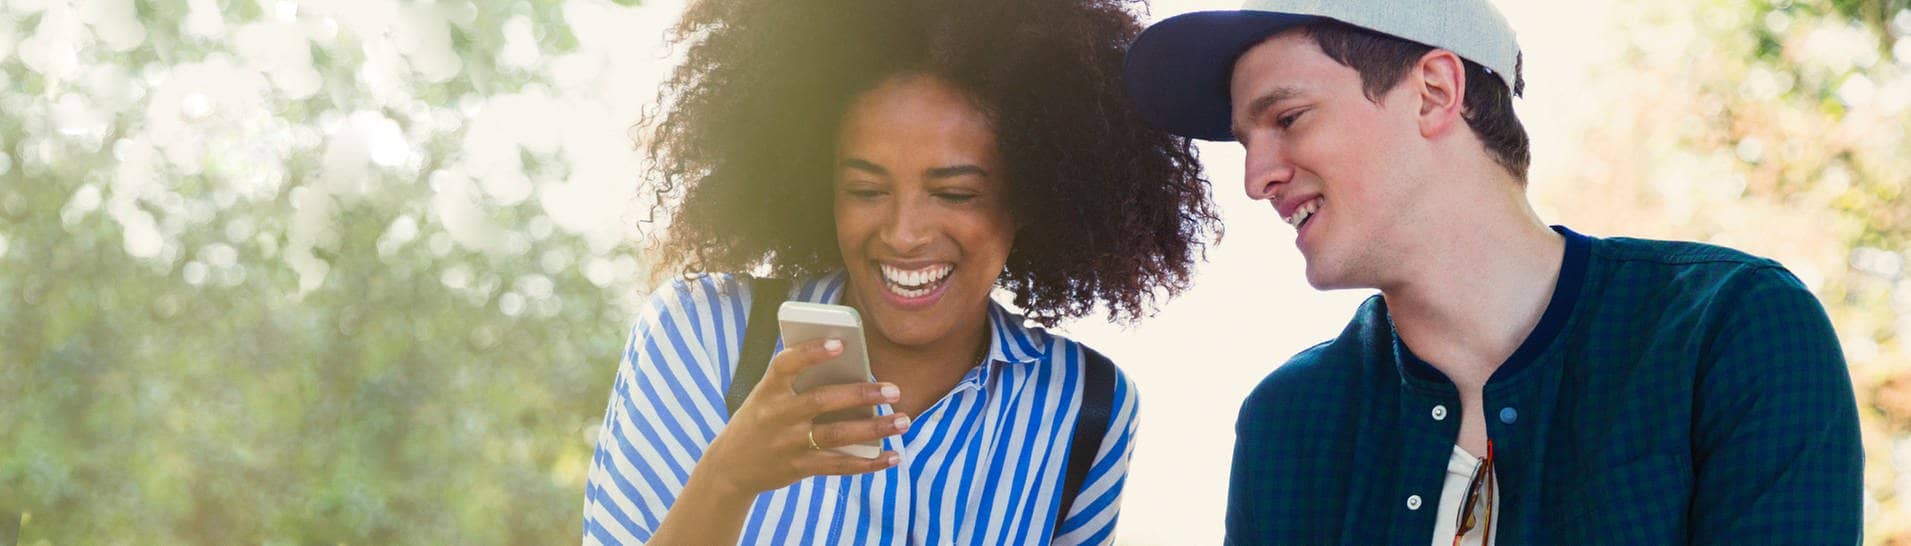 Zwei fröhliche Menschen lesen gute Nachrichten auf einem Smartphone